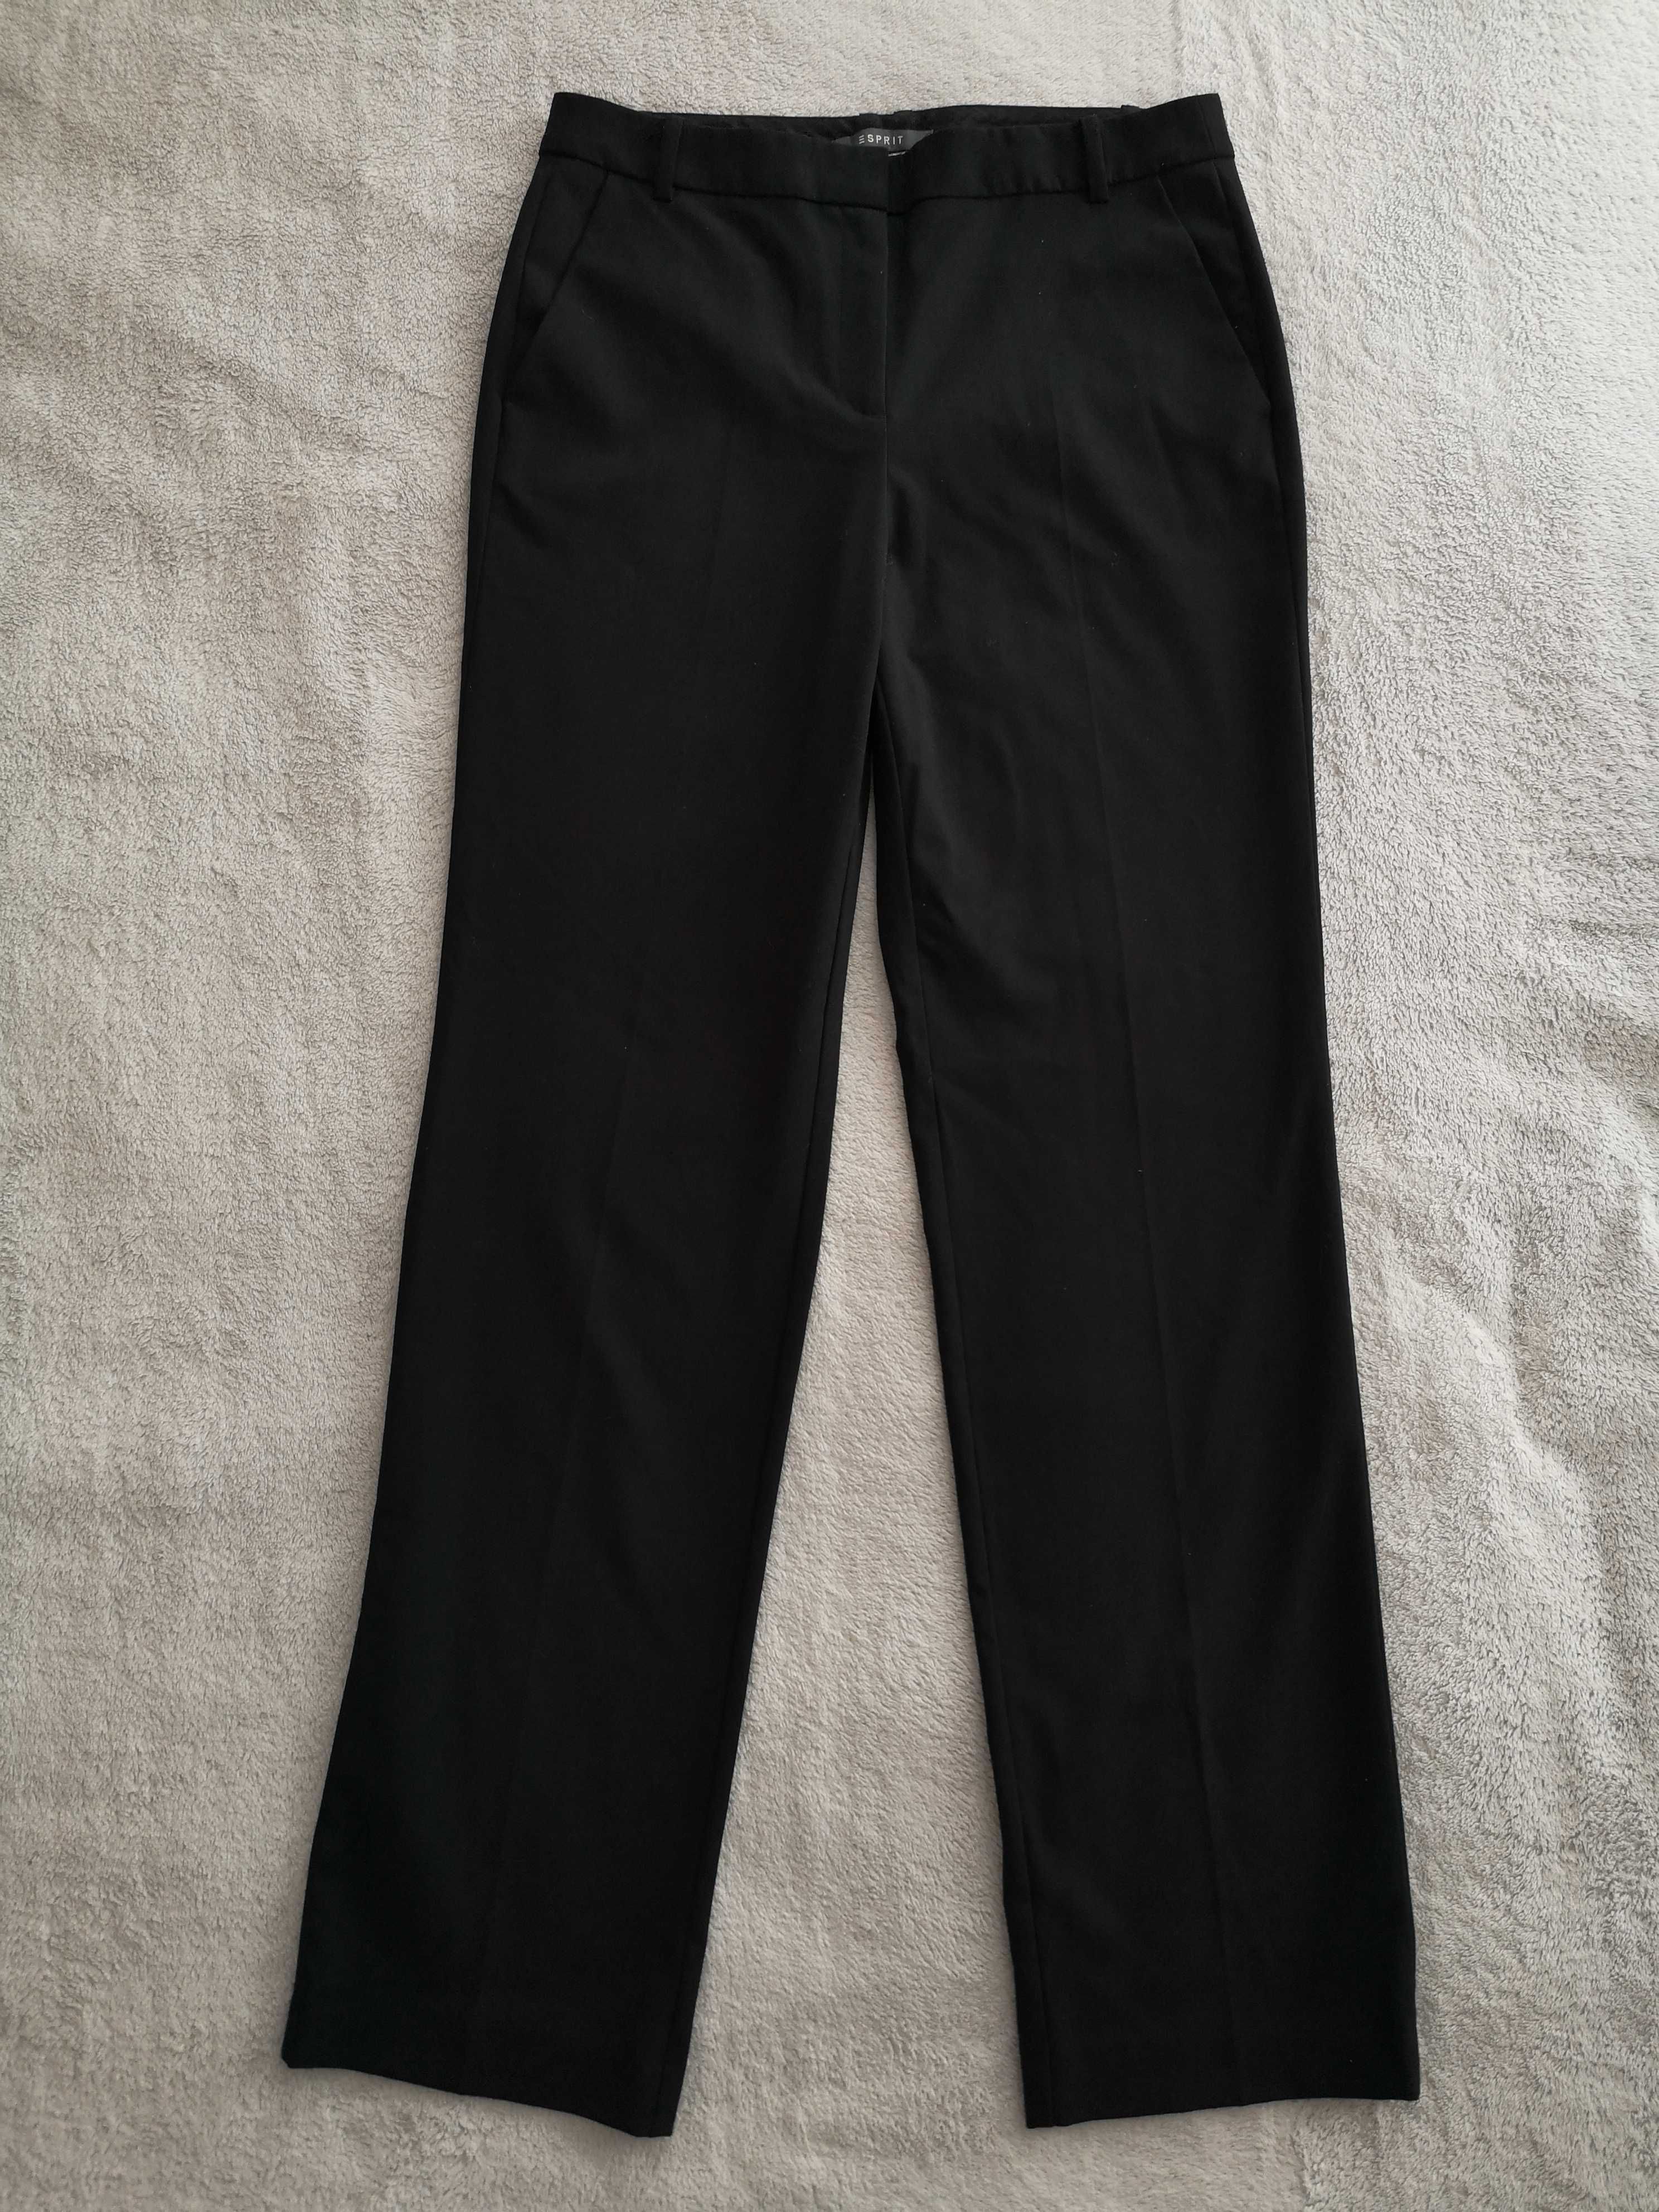 Czarne eleganckie spodnie w kant Esprit 34 - 36 jak nowe